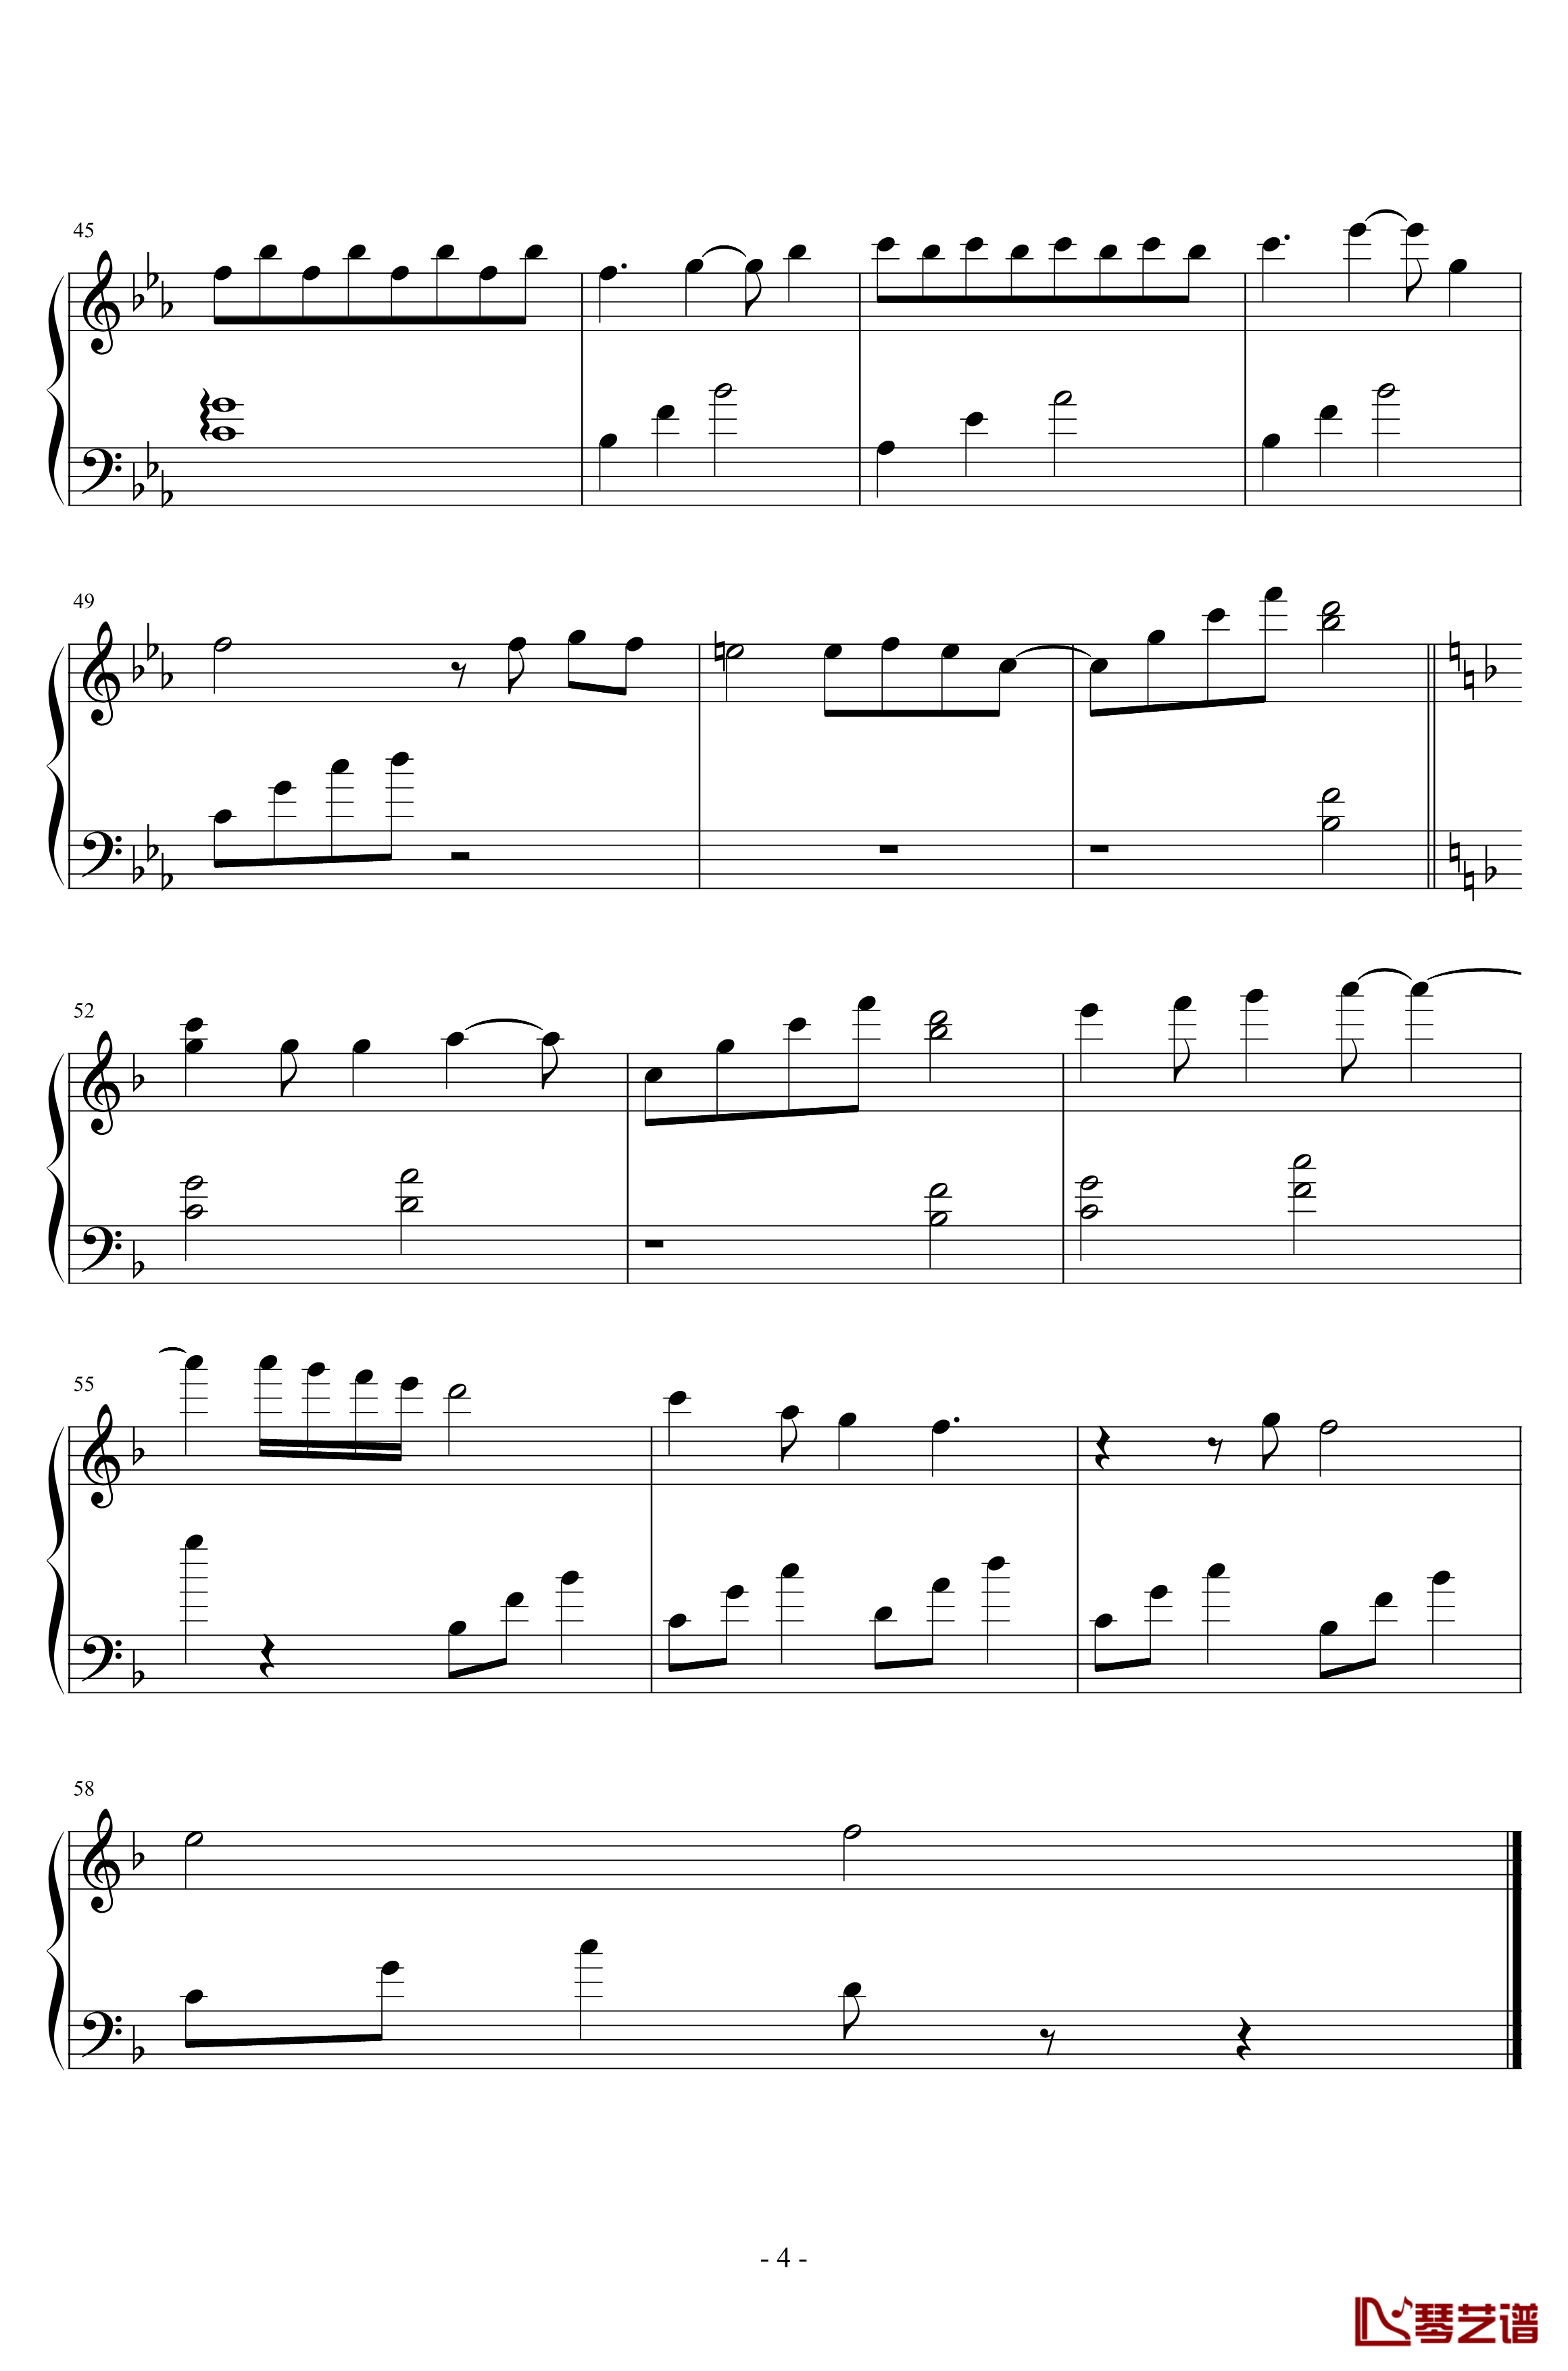 oyce's theme钢琴谱-richard5304